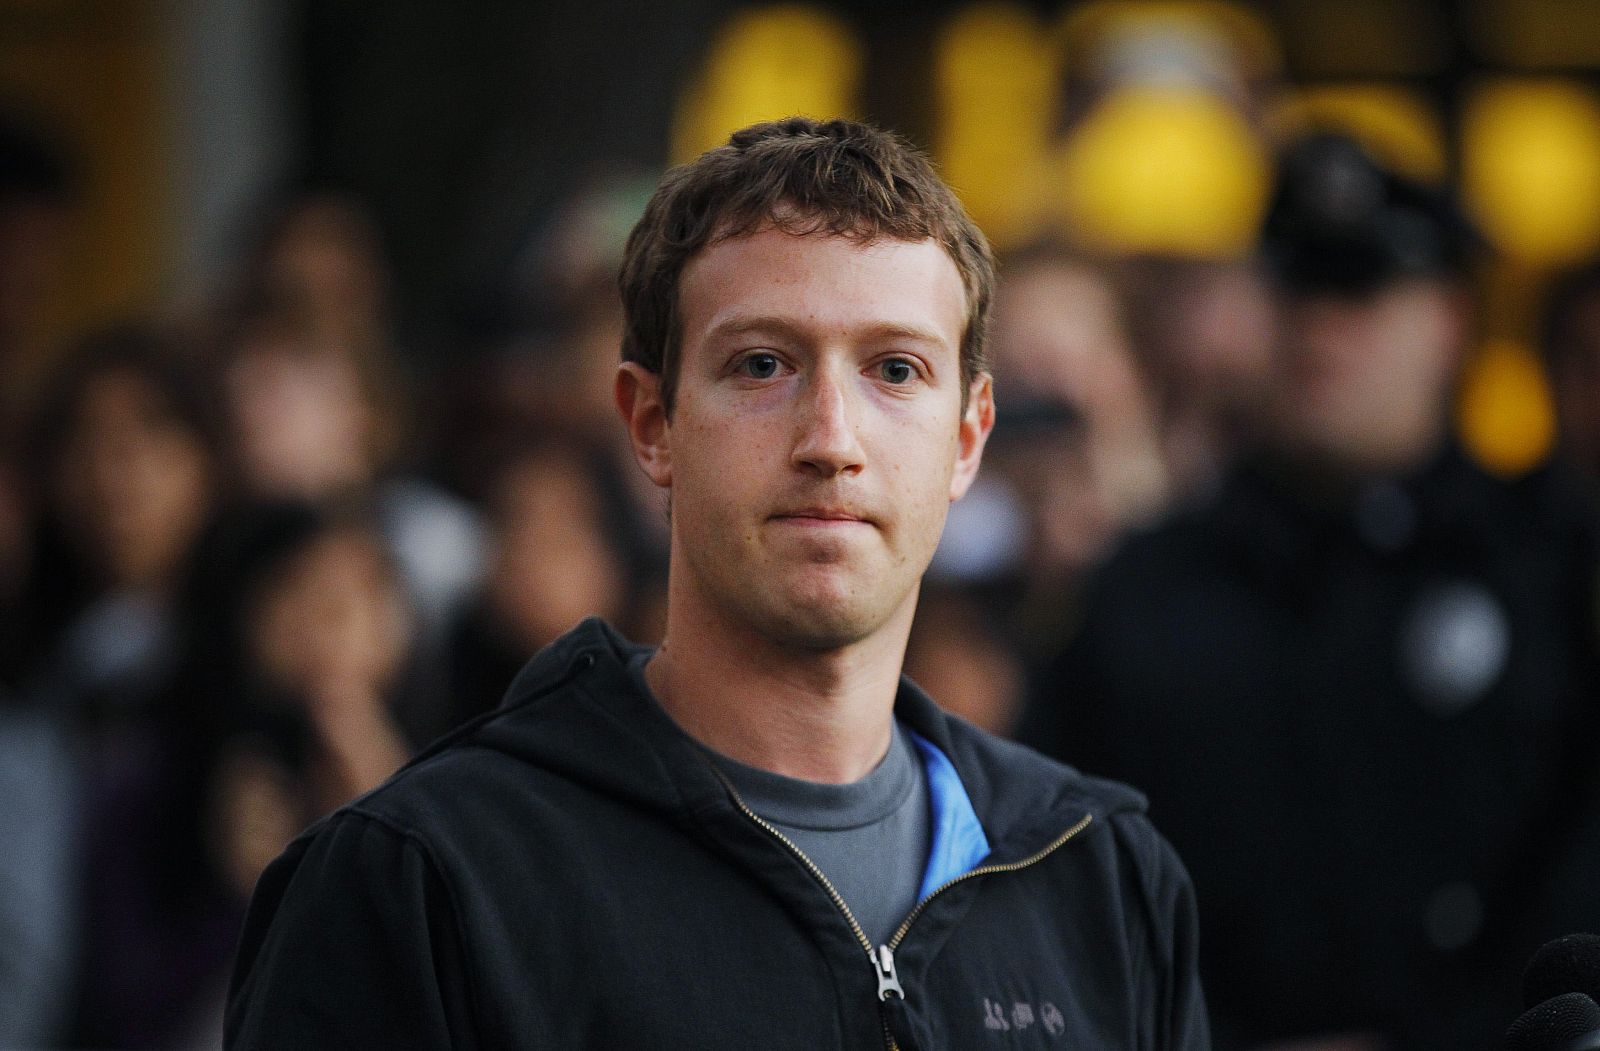 El fundador de Facebook Mark Zuckerberg durante su visita el pasado lunes a la universidad de Harvard